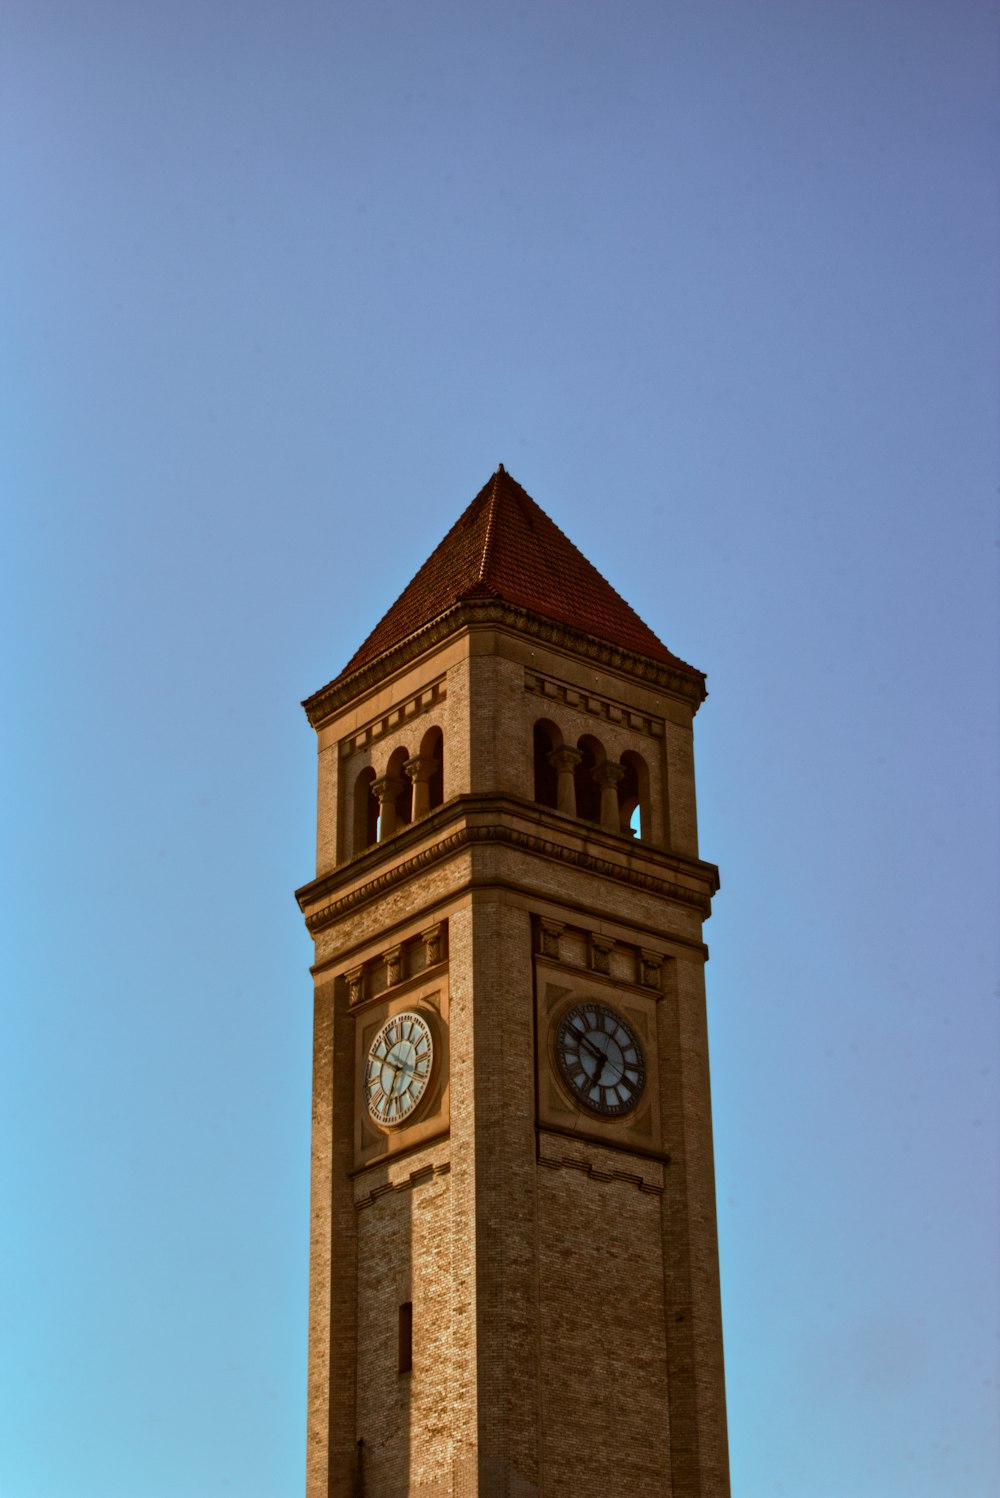 양쪽에 시계가 있는 높은 시계탑